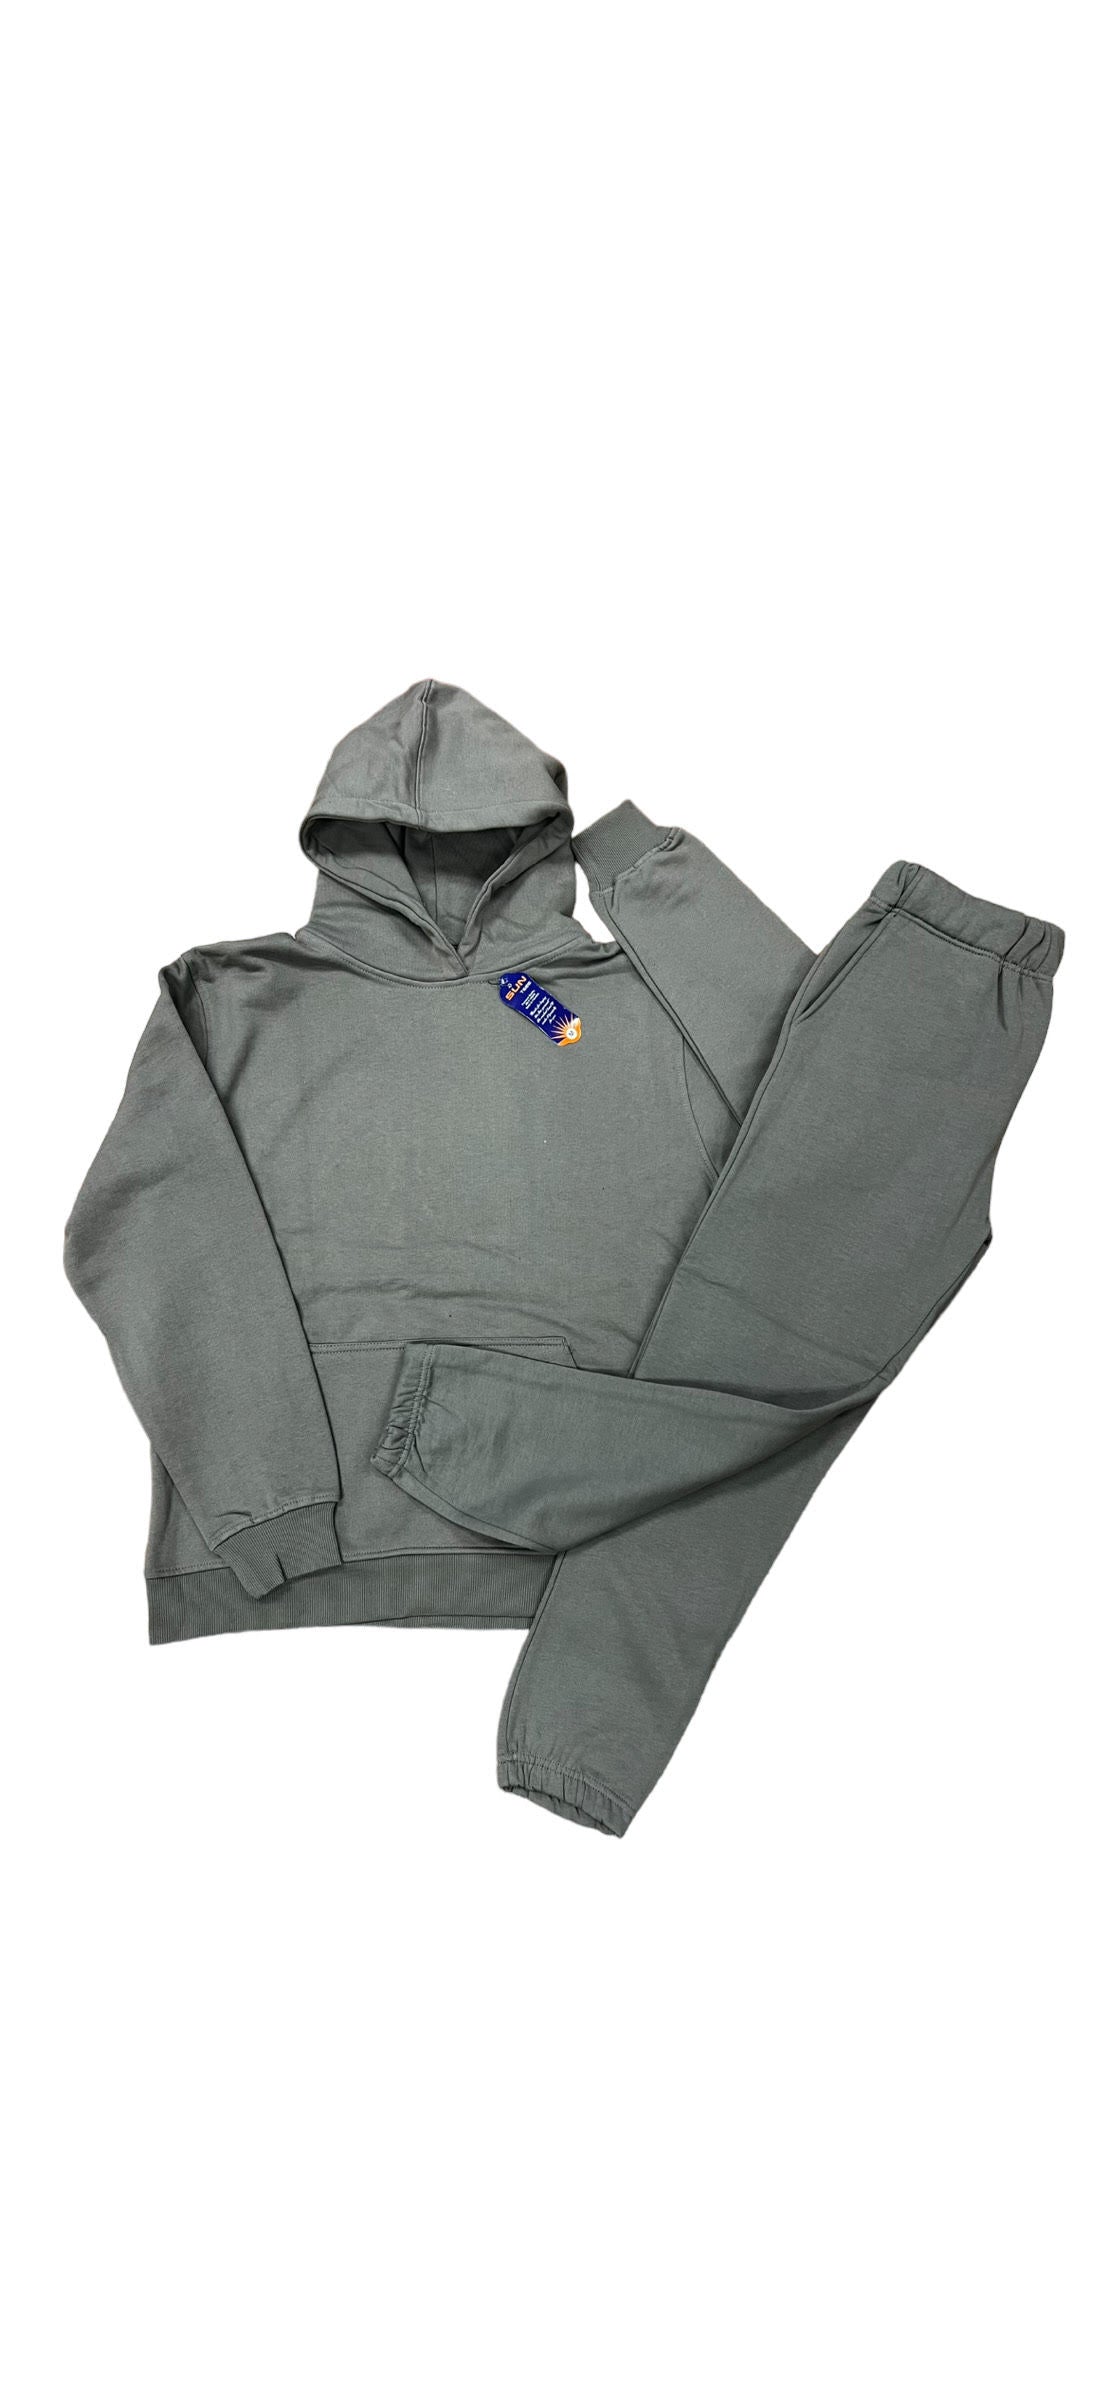 grey hoodie set